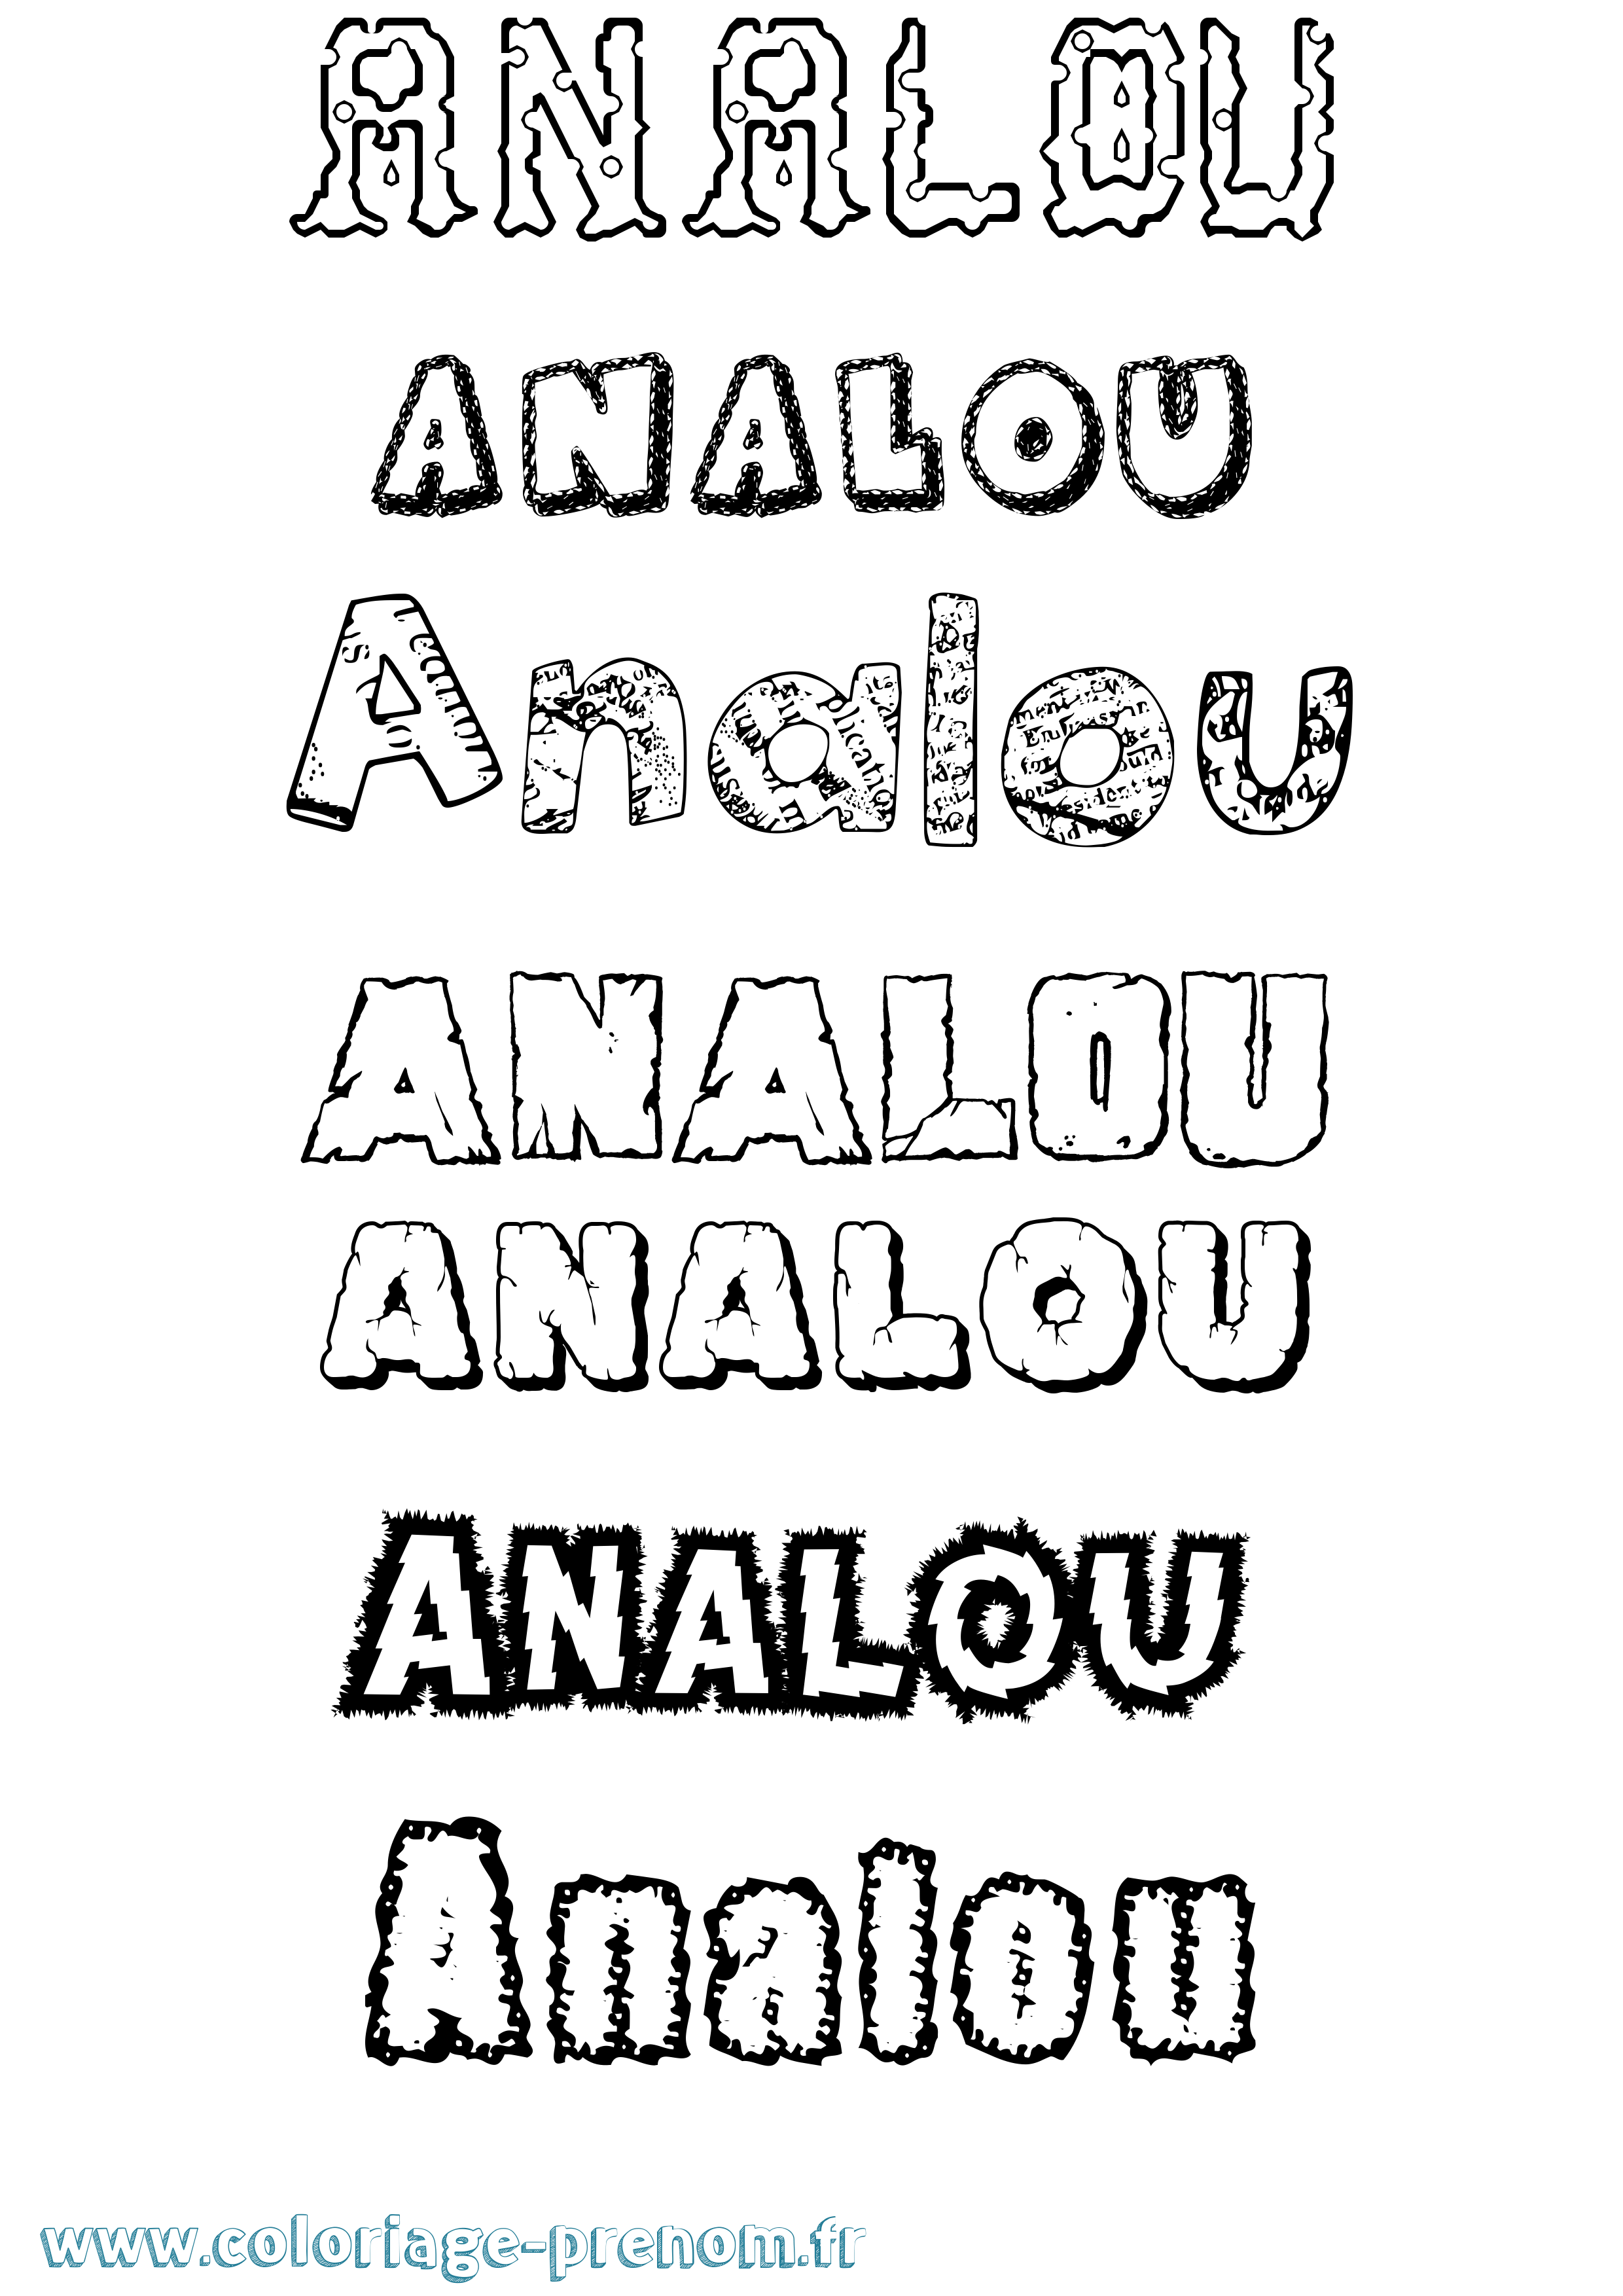 Coloriage prénom Analou Destructuré